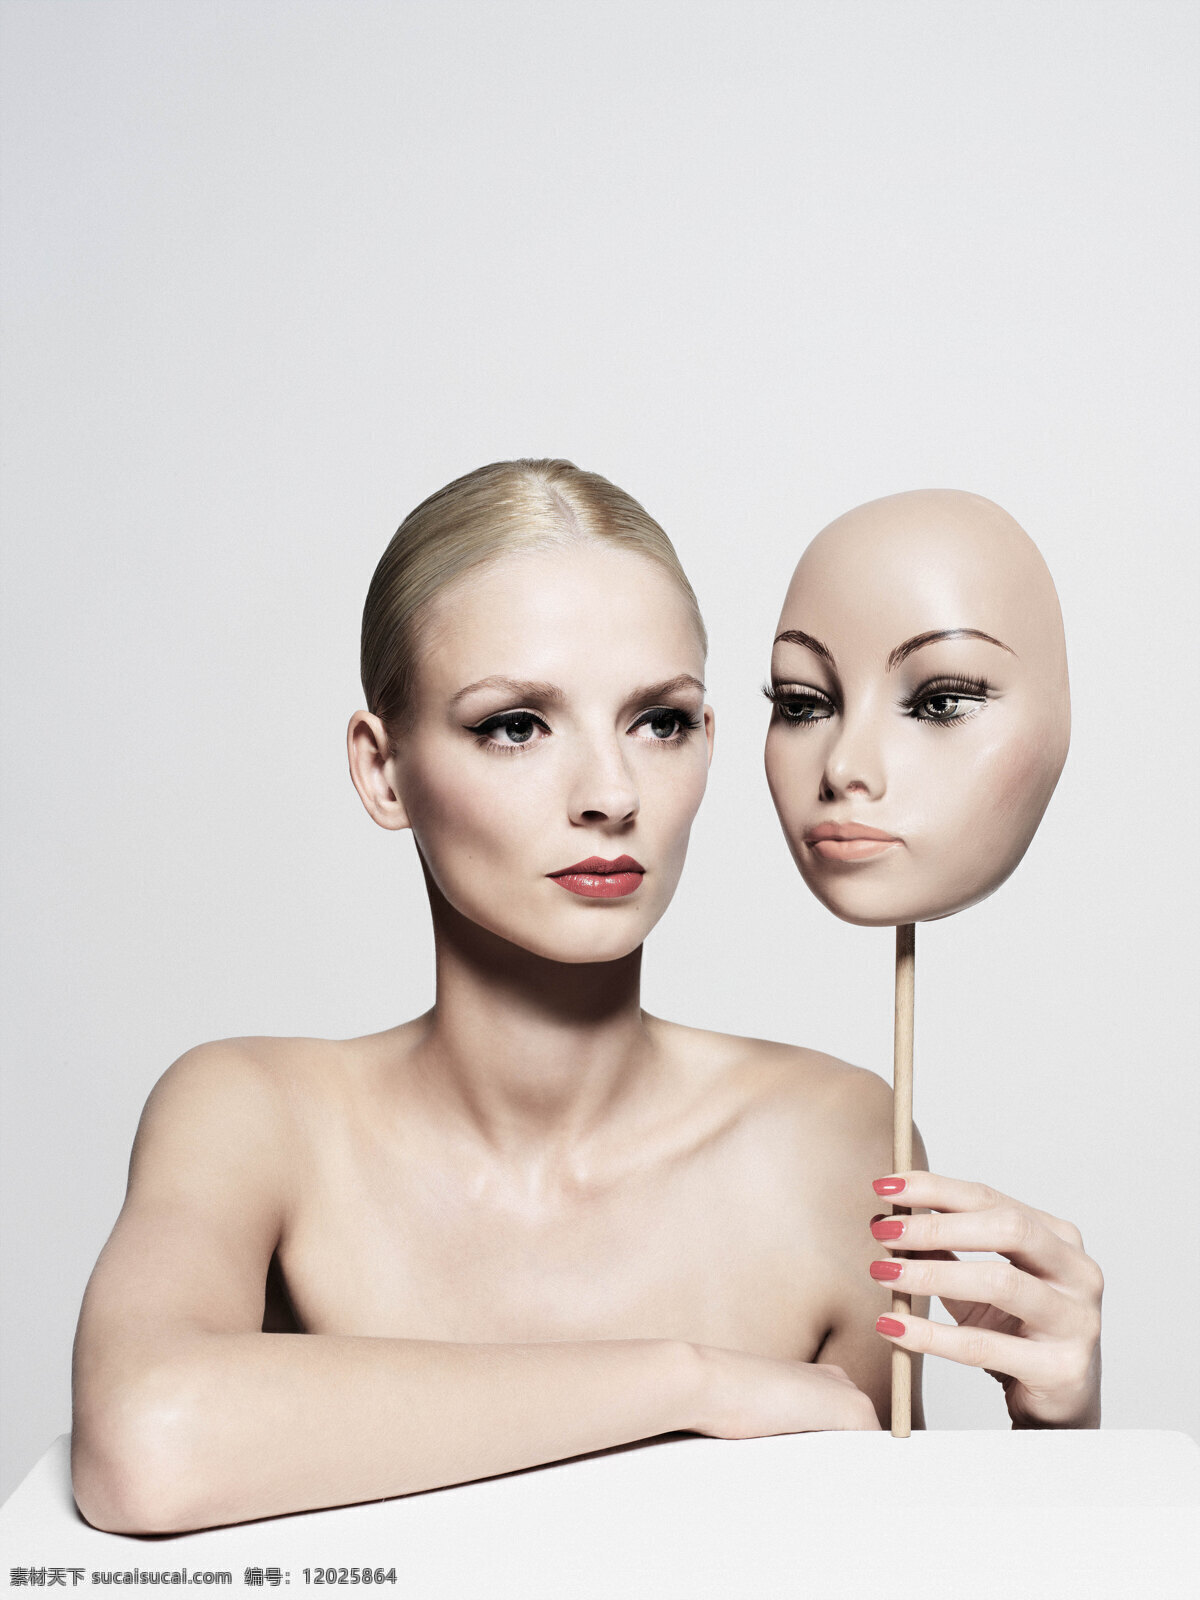 广告 护肤 化妆品 美女 女性女人 人物图库 假面 创意